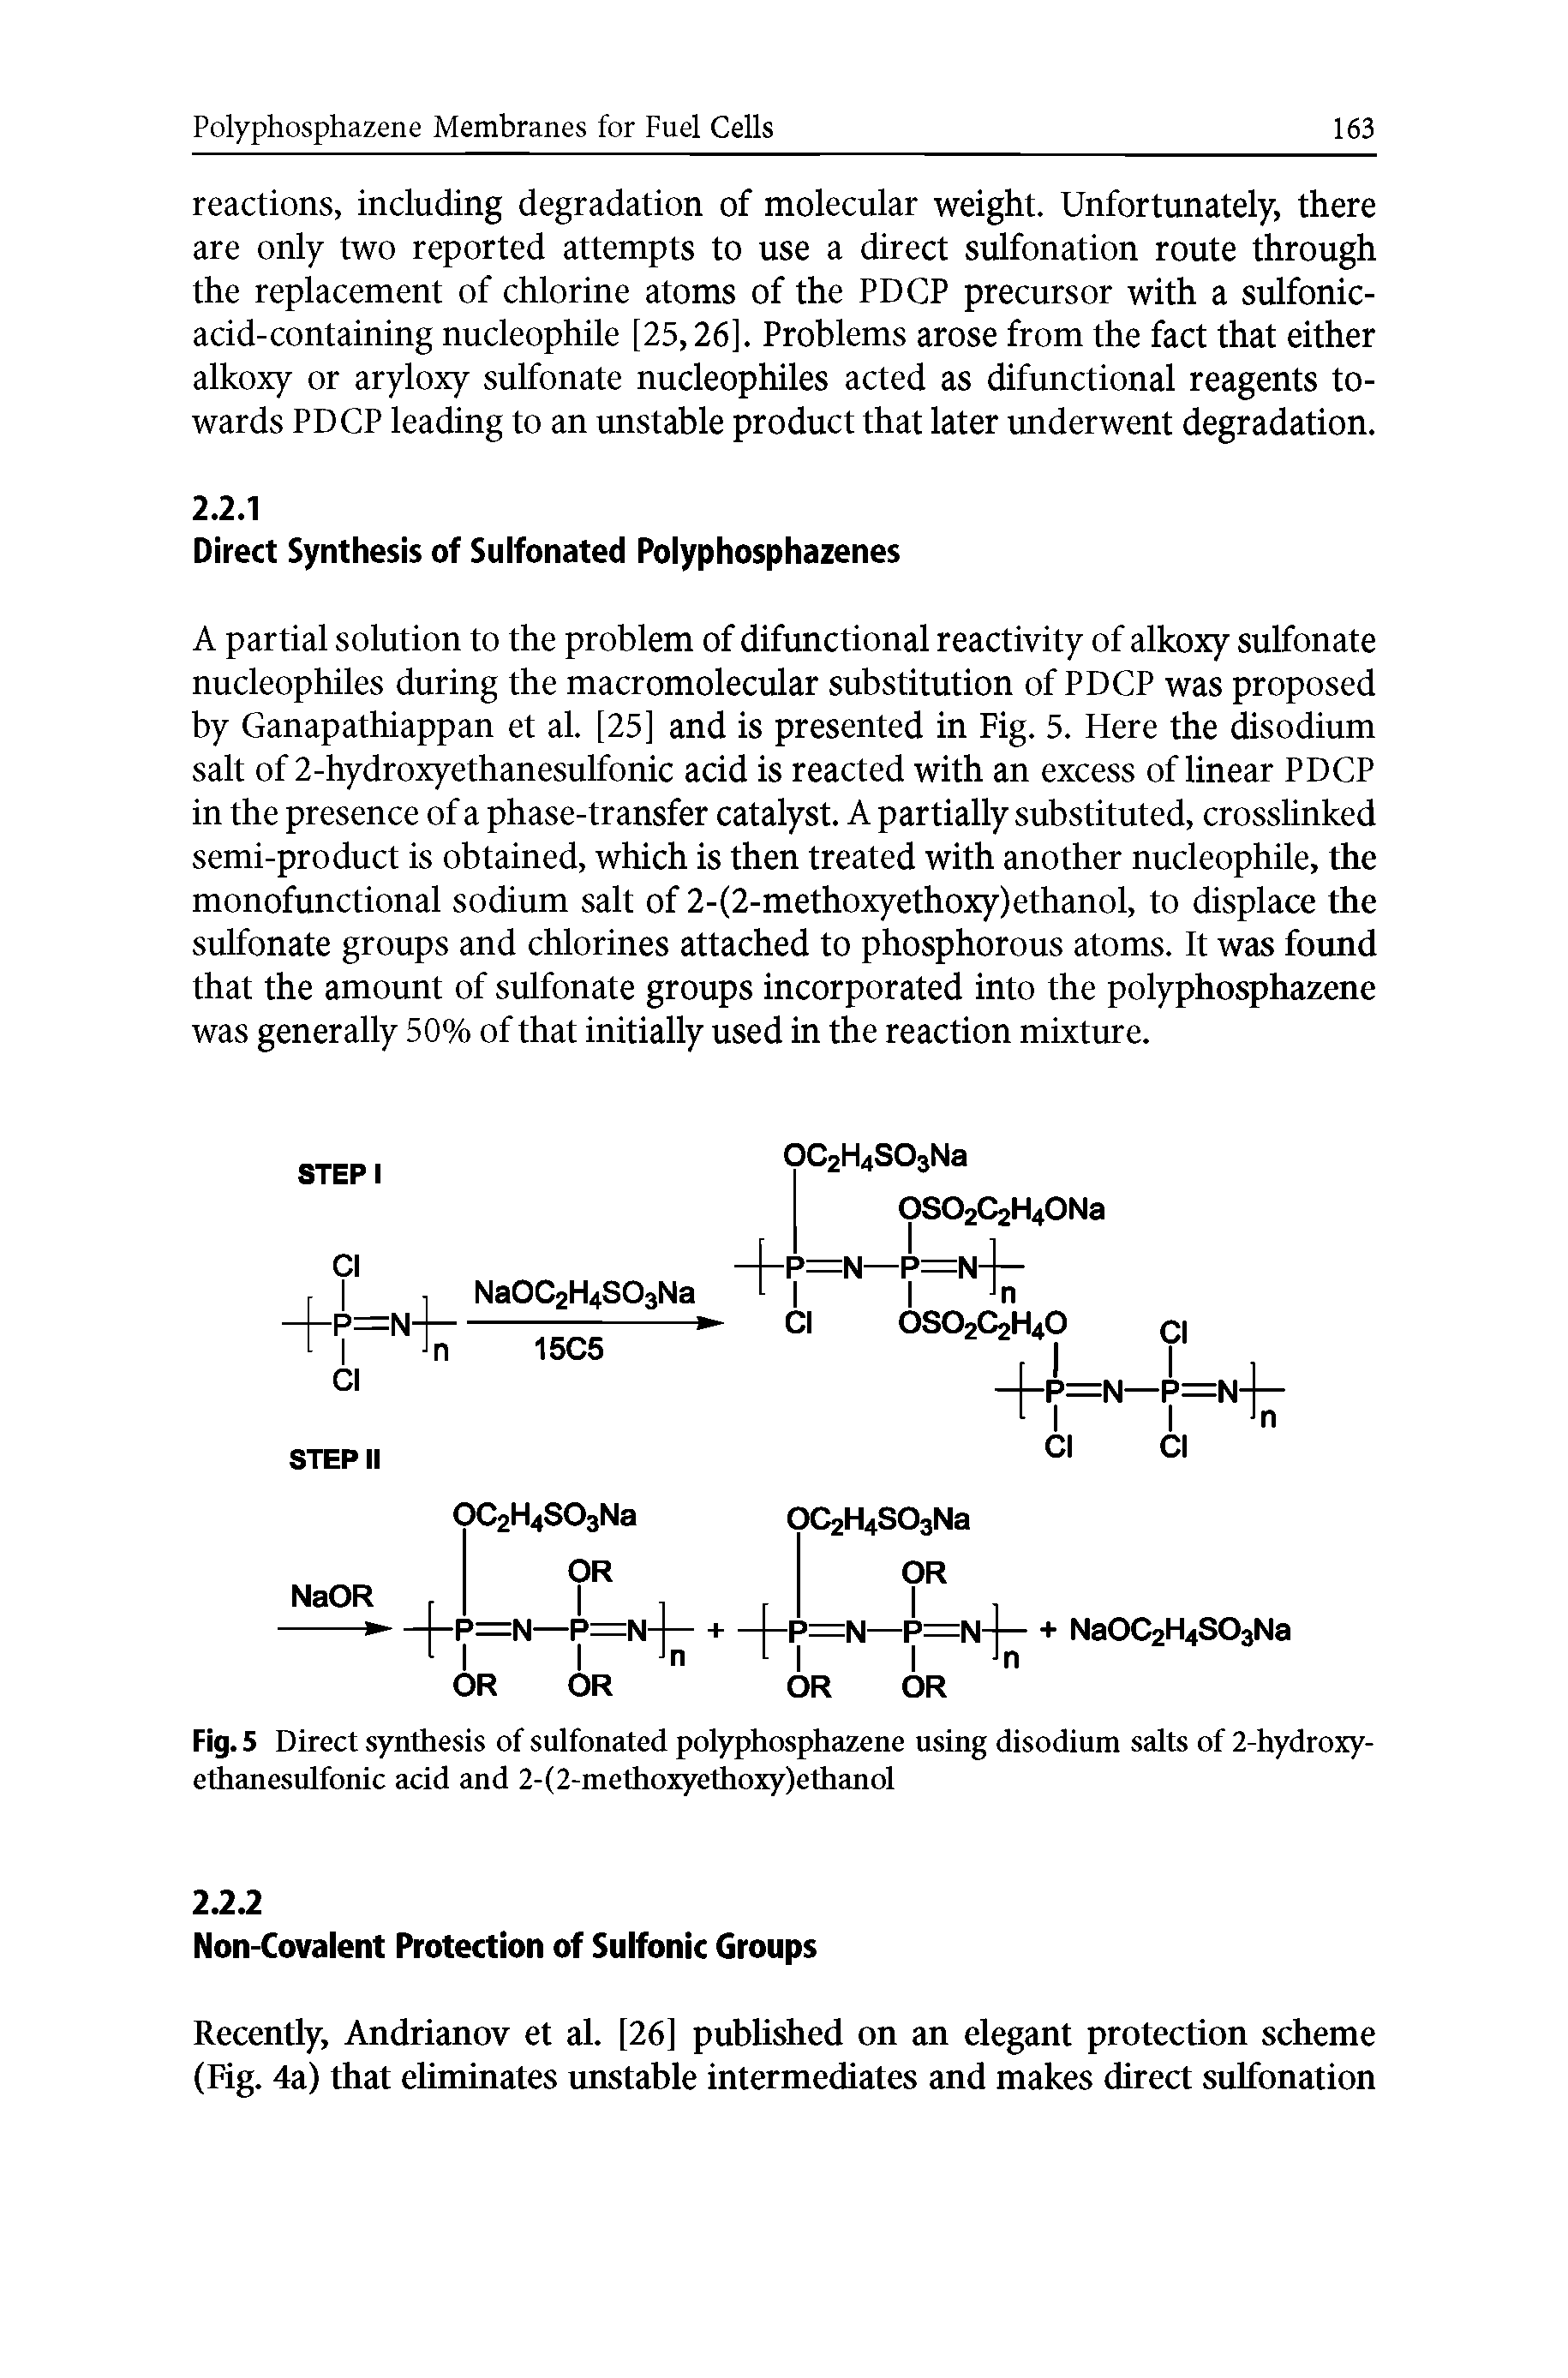 Fig. 5 Direct synthesis of suifonated polyphosphazene using disodium salts of 2-hydroxyethanesulfonic acid and 2-(2-methoxyethoxy)ethanol...